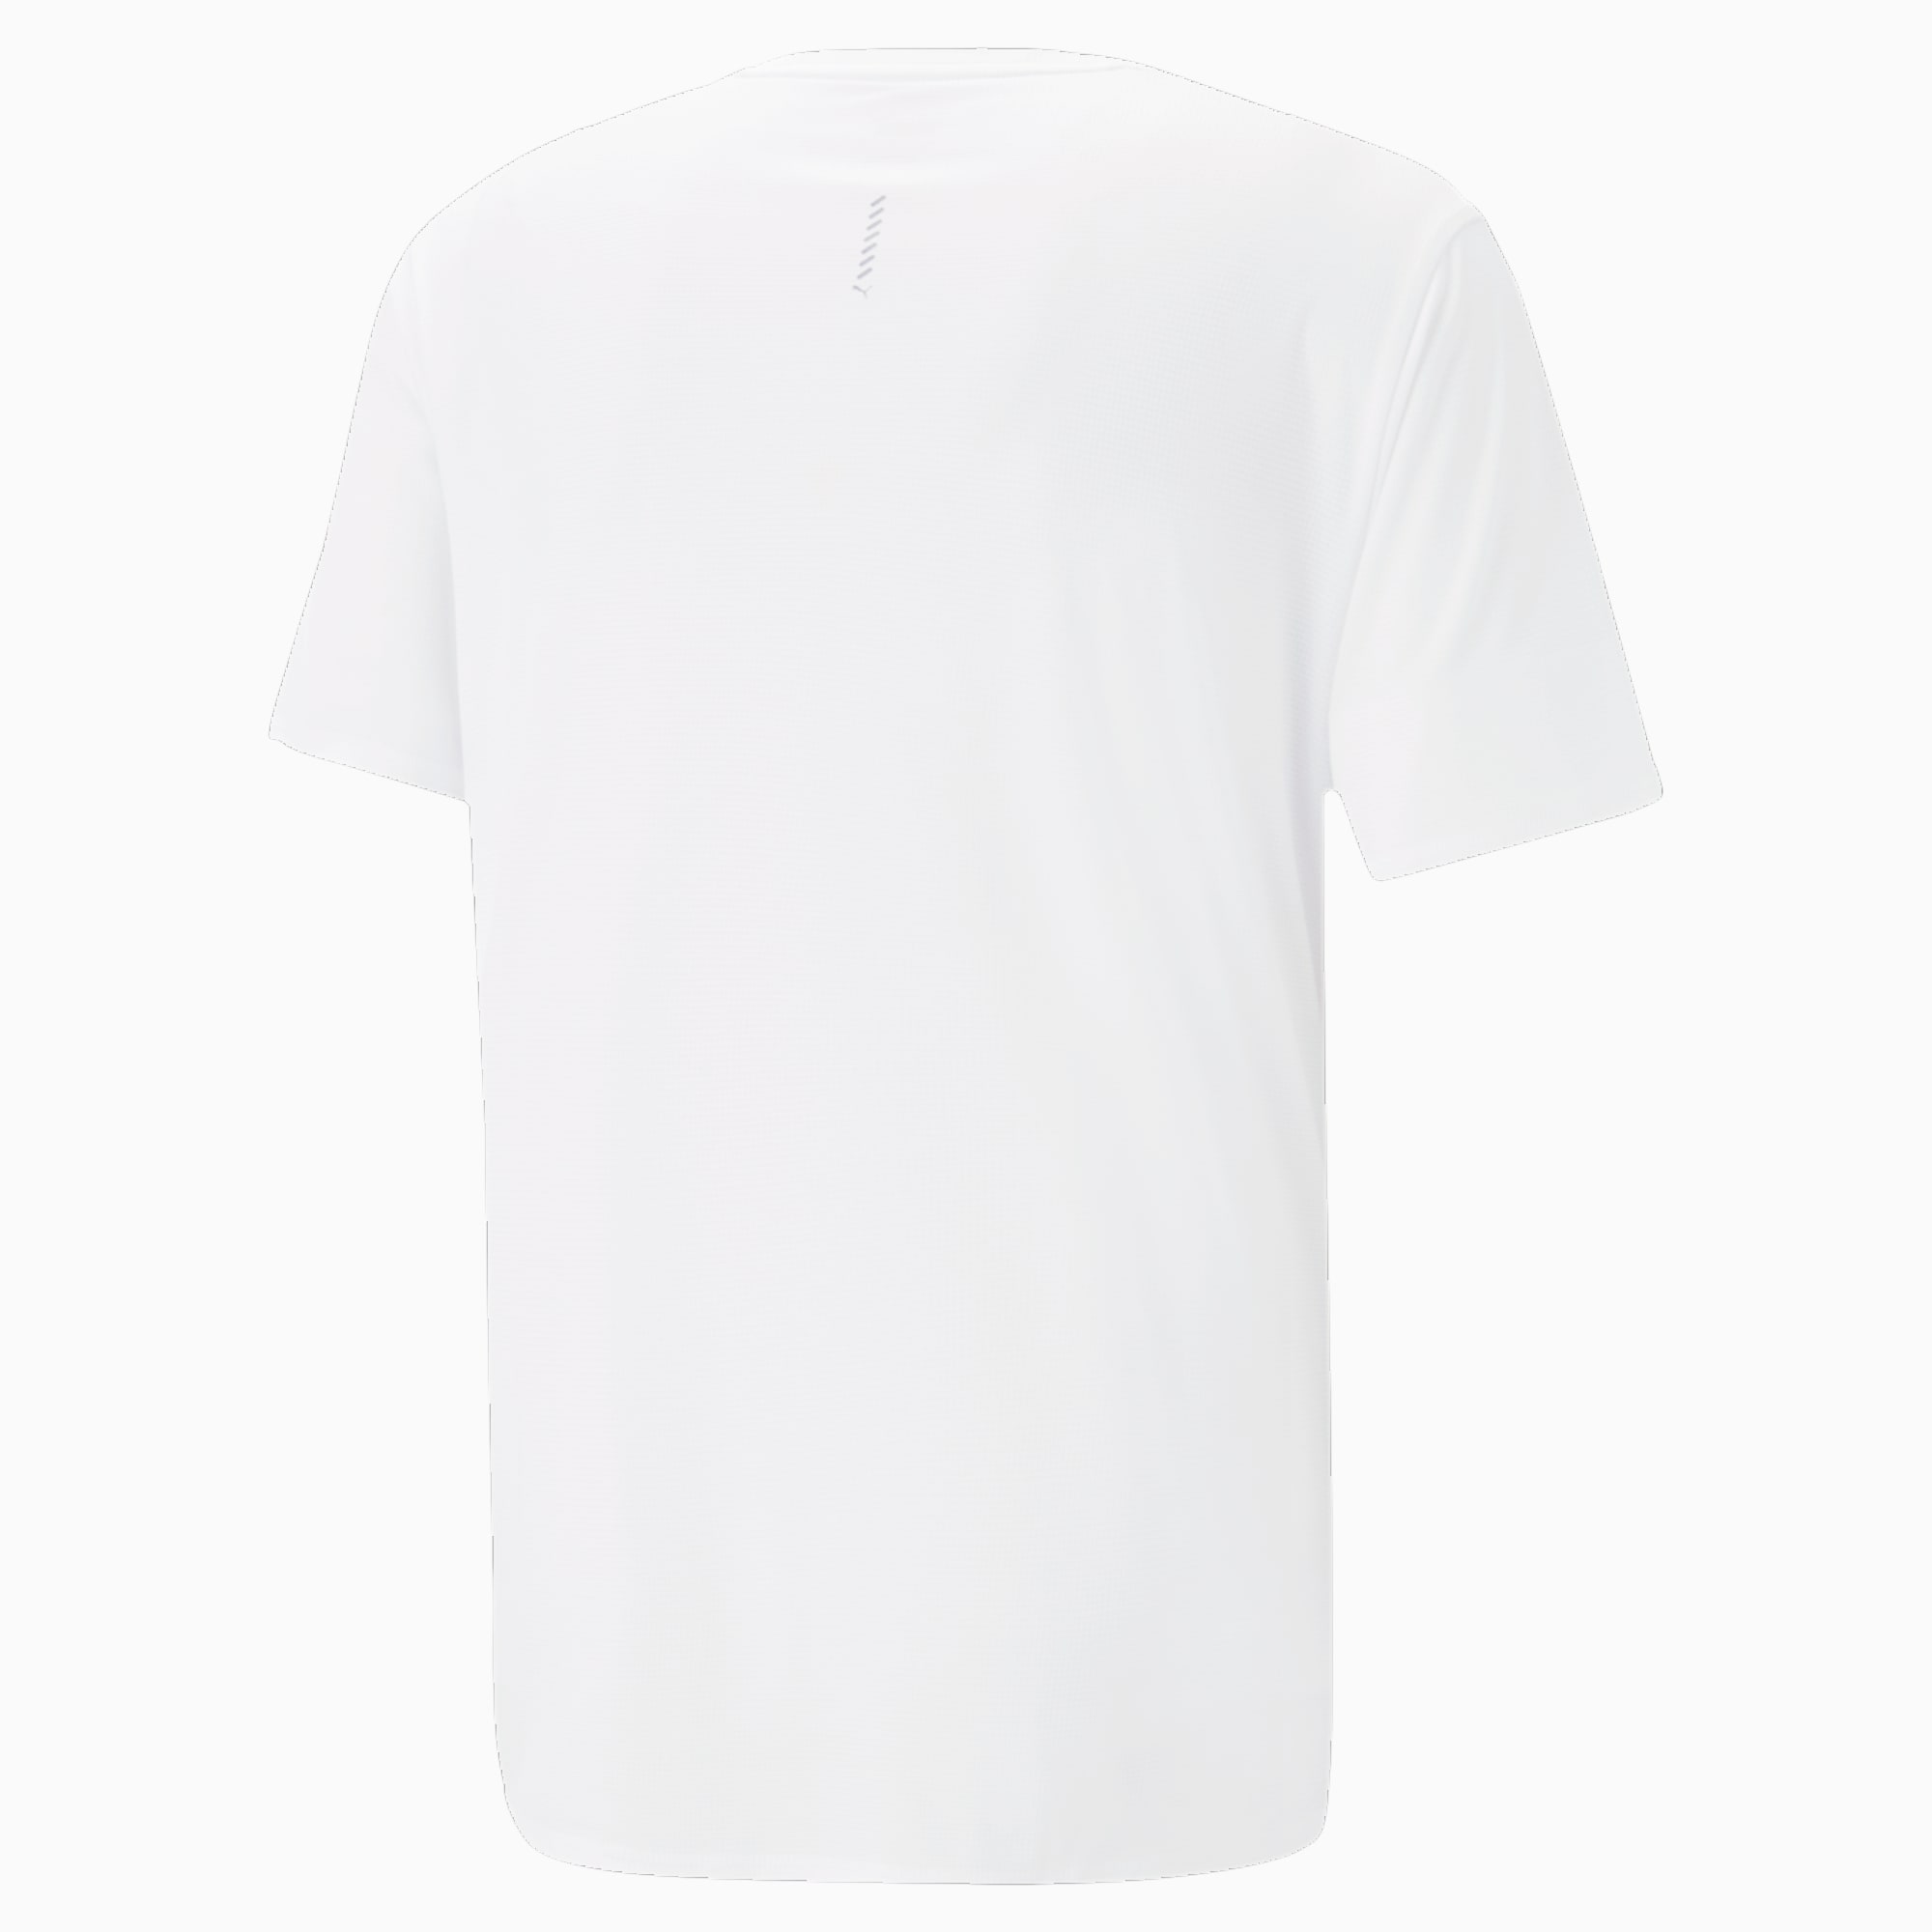 プーマ ランニングウェア Tシャツ 長袖 メンズ RUN FAVORITE LS Tシャツ 523669 01 PUMA Run ウェア 